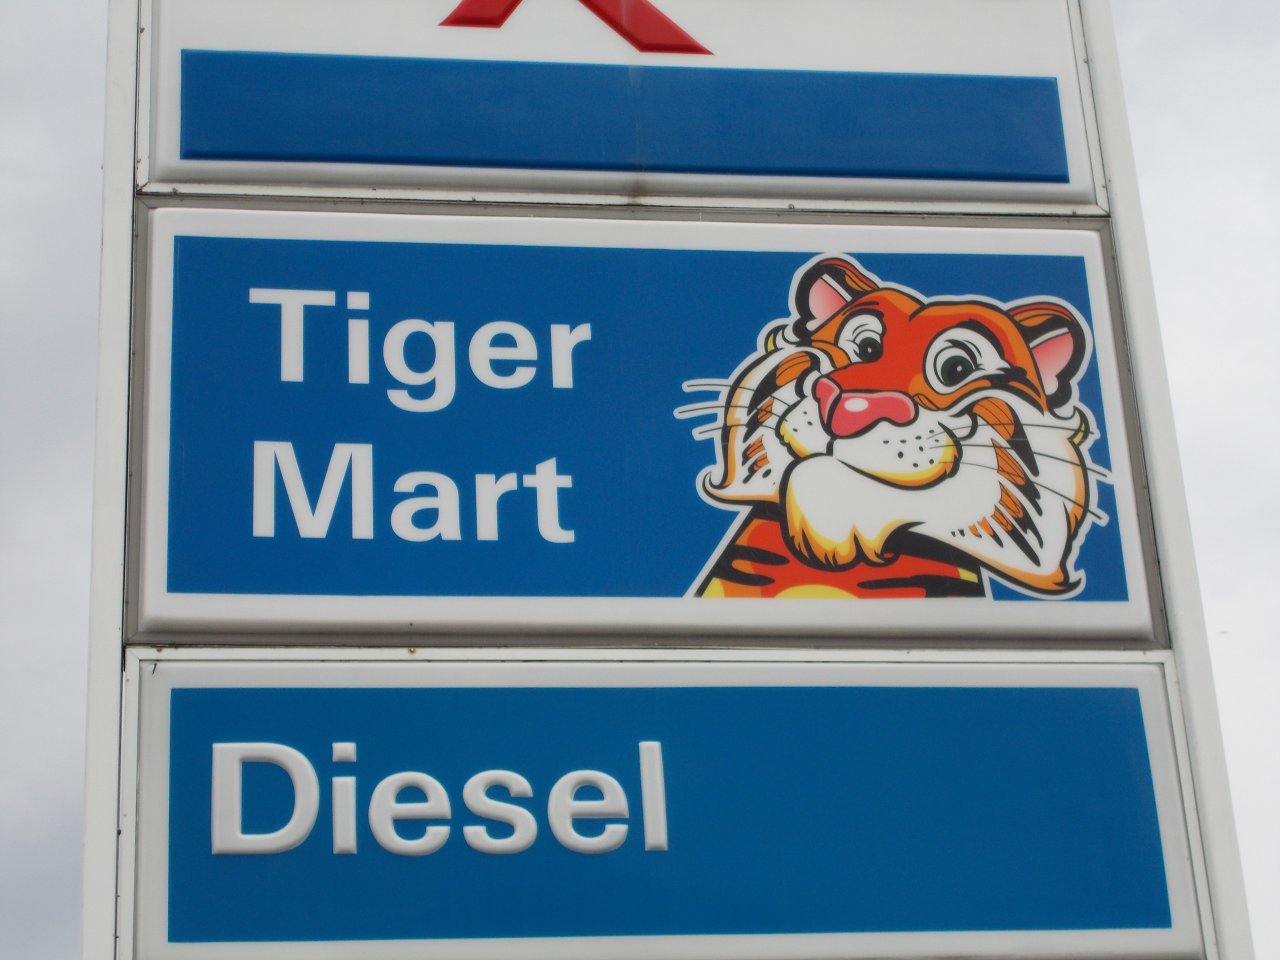 Exxon Tiger Logo